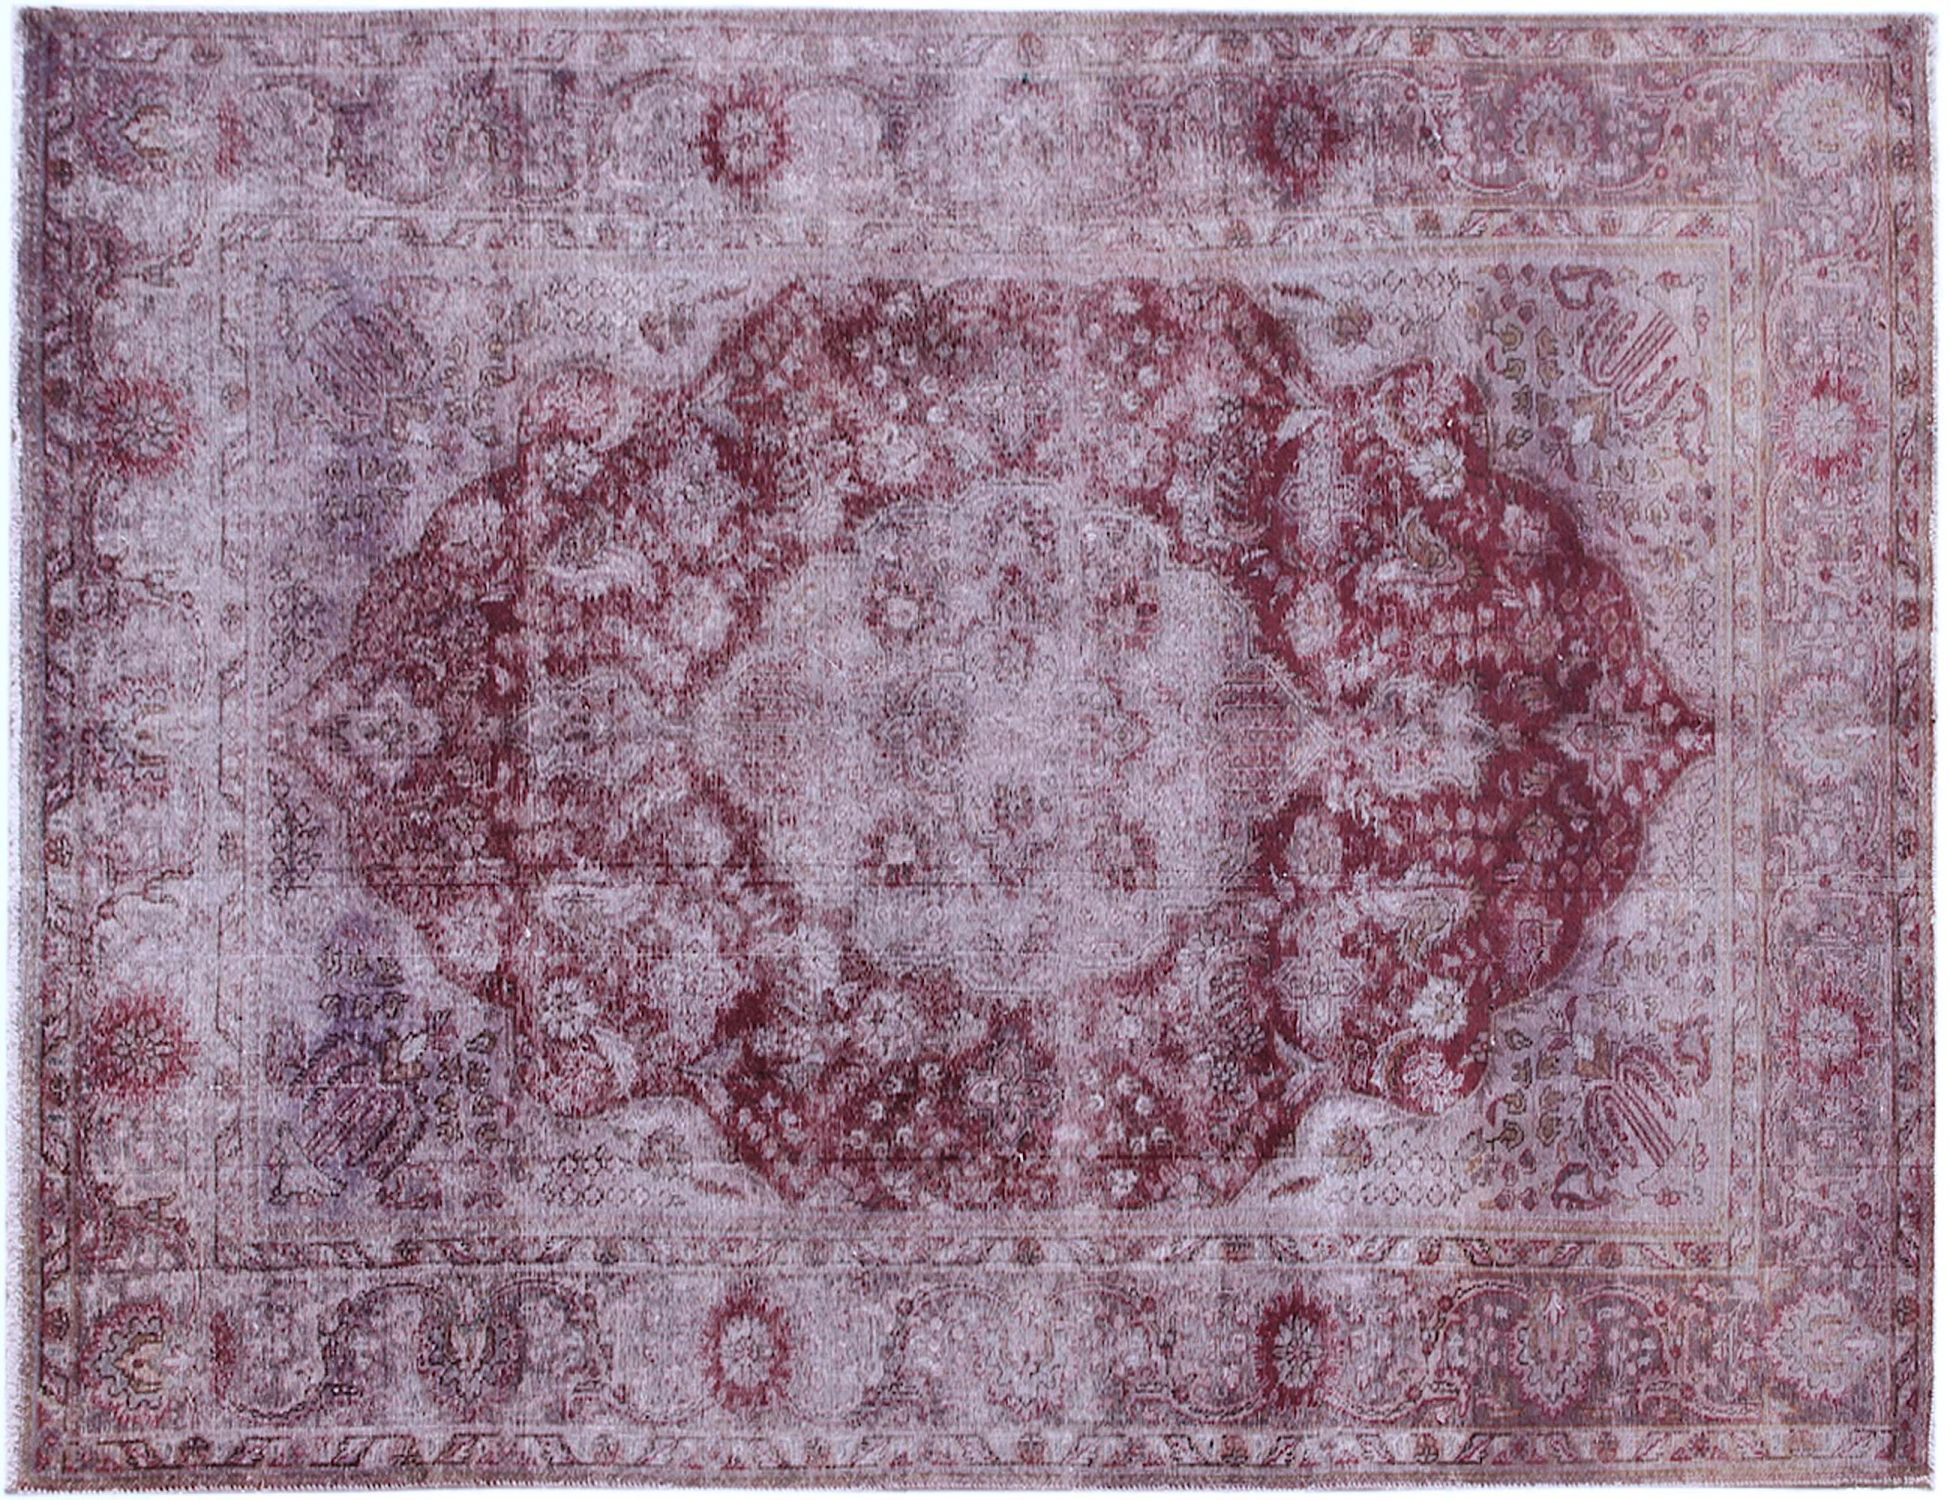 Persischer Vintage Teppich  lila <br/>285 x 198 cm